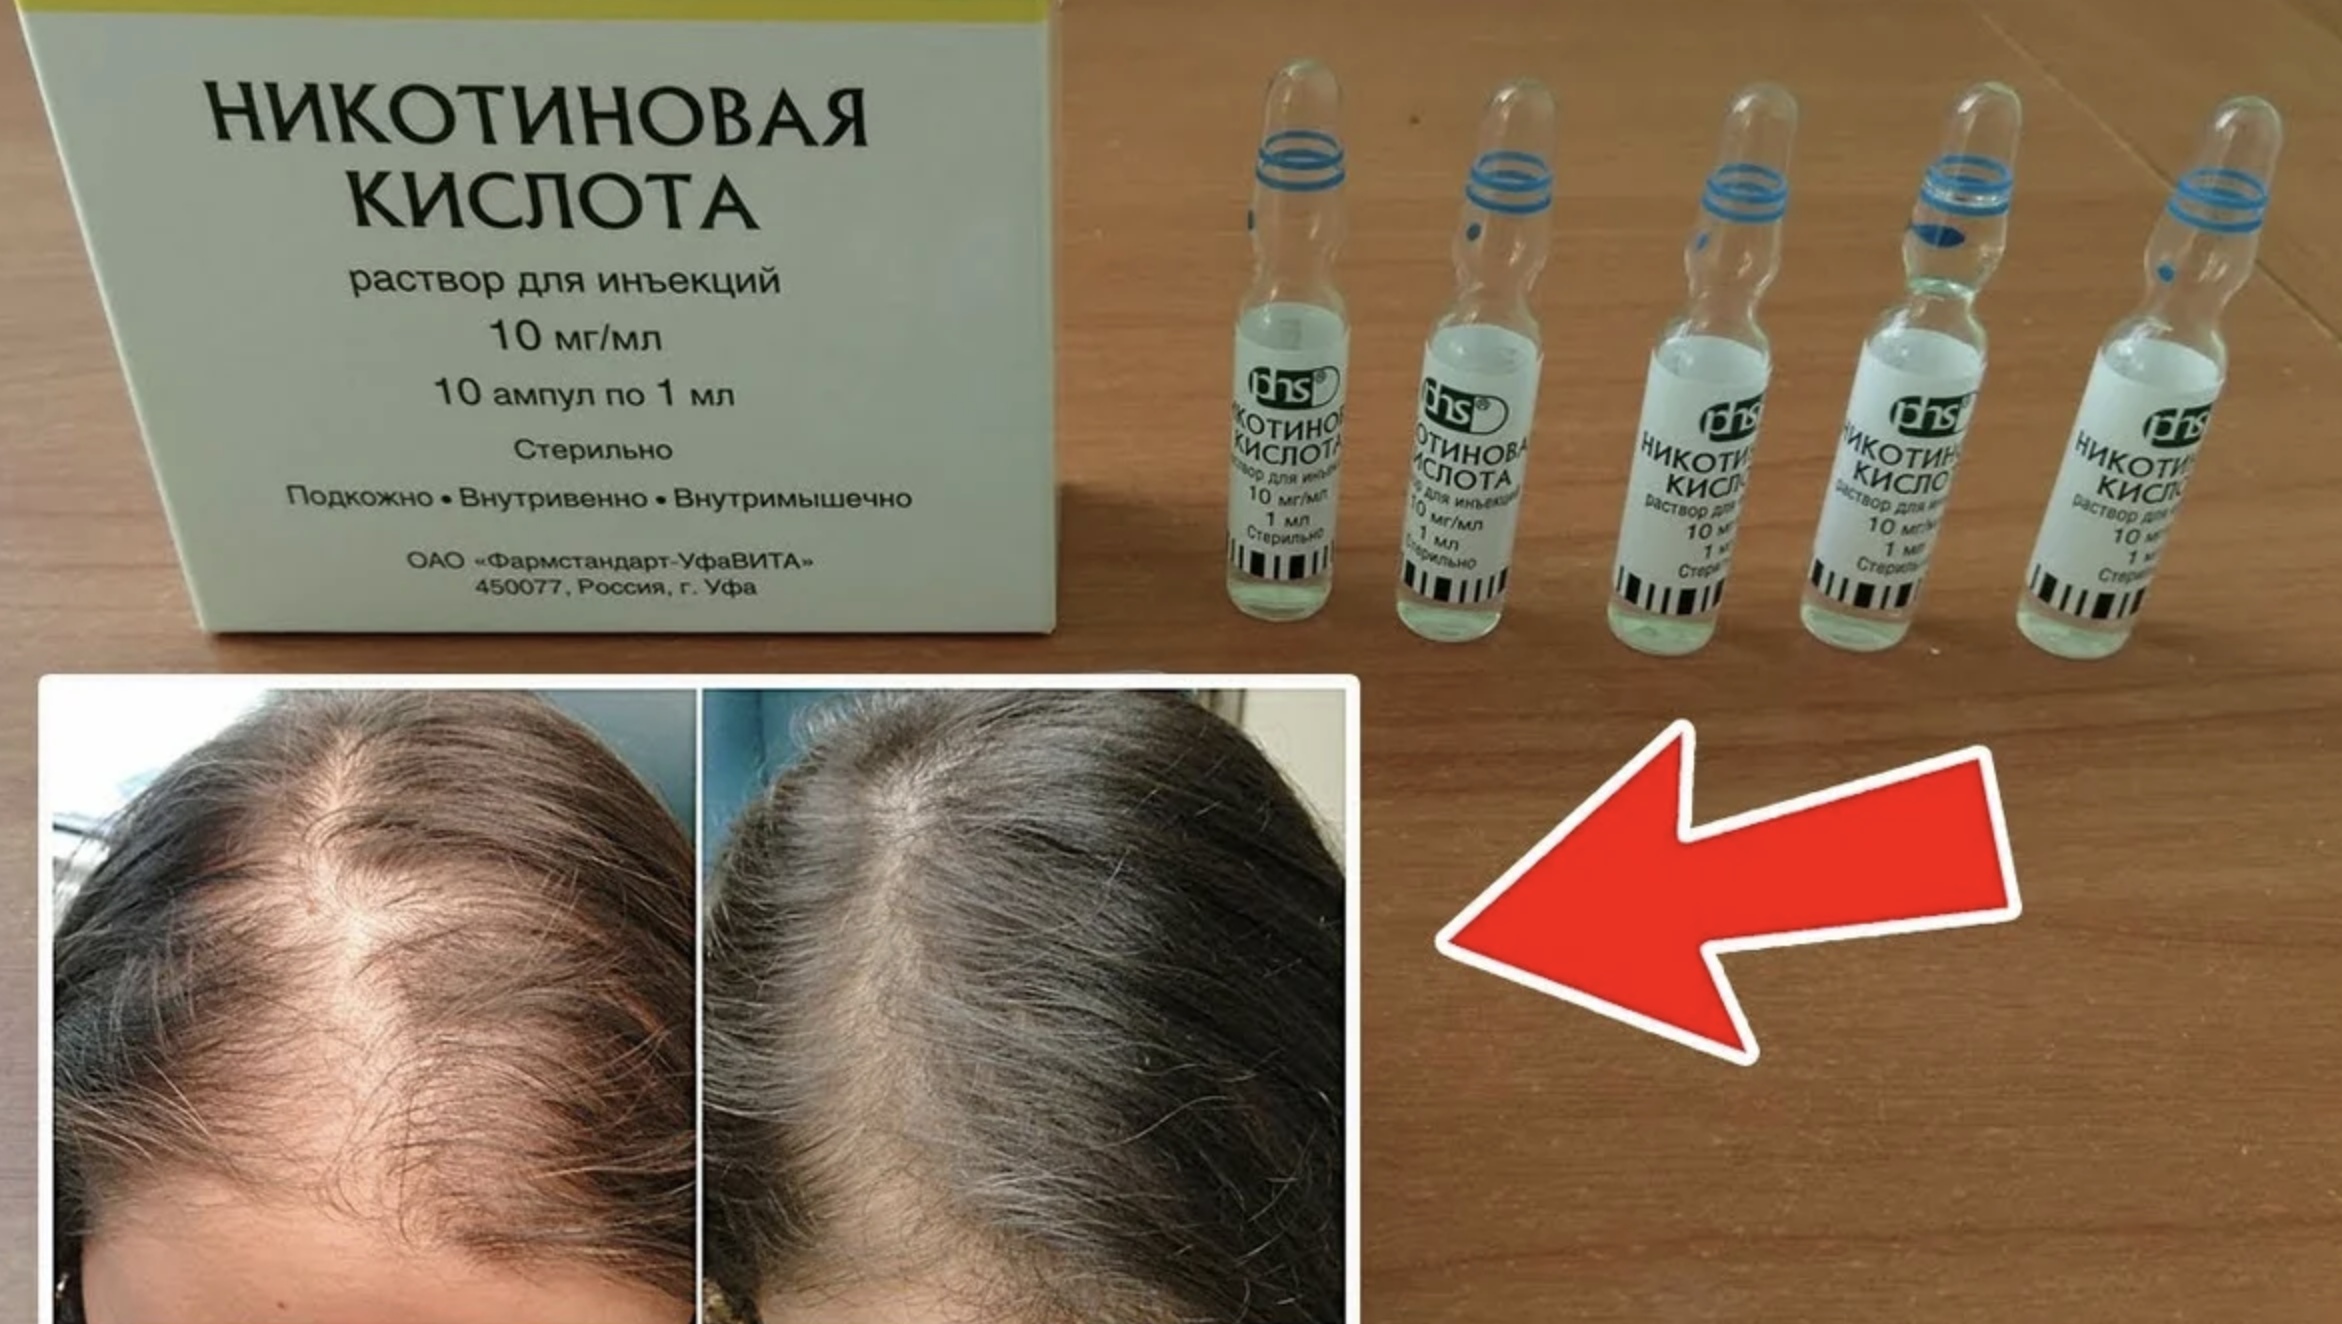 Никотиновая кислота (витамин в3, витамин рр, ниацин) - описание и инструкция по применению (таблетки, уколы), в каких продуктах содержится, как применять для похудения, для роста и укрепления волос, отзывы